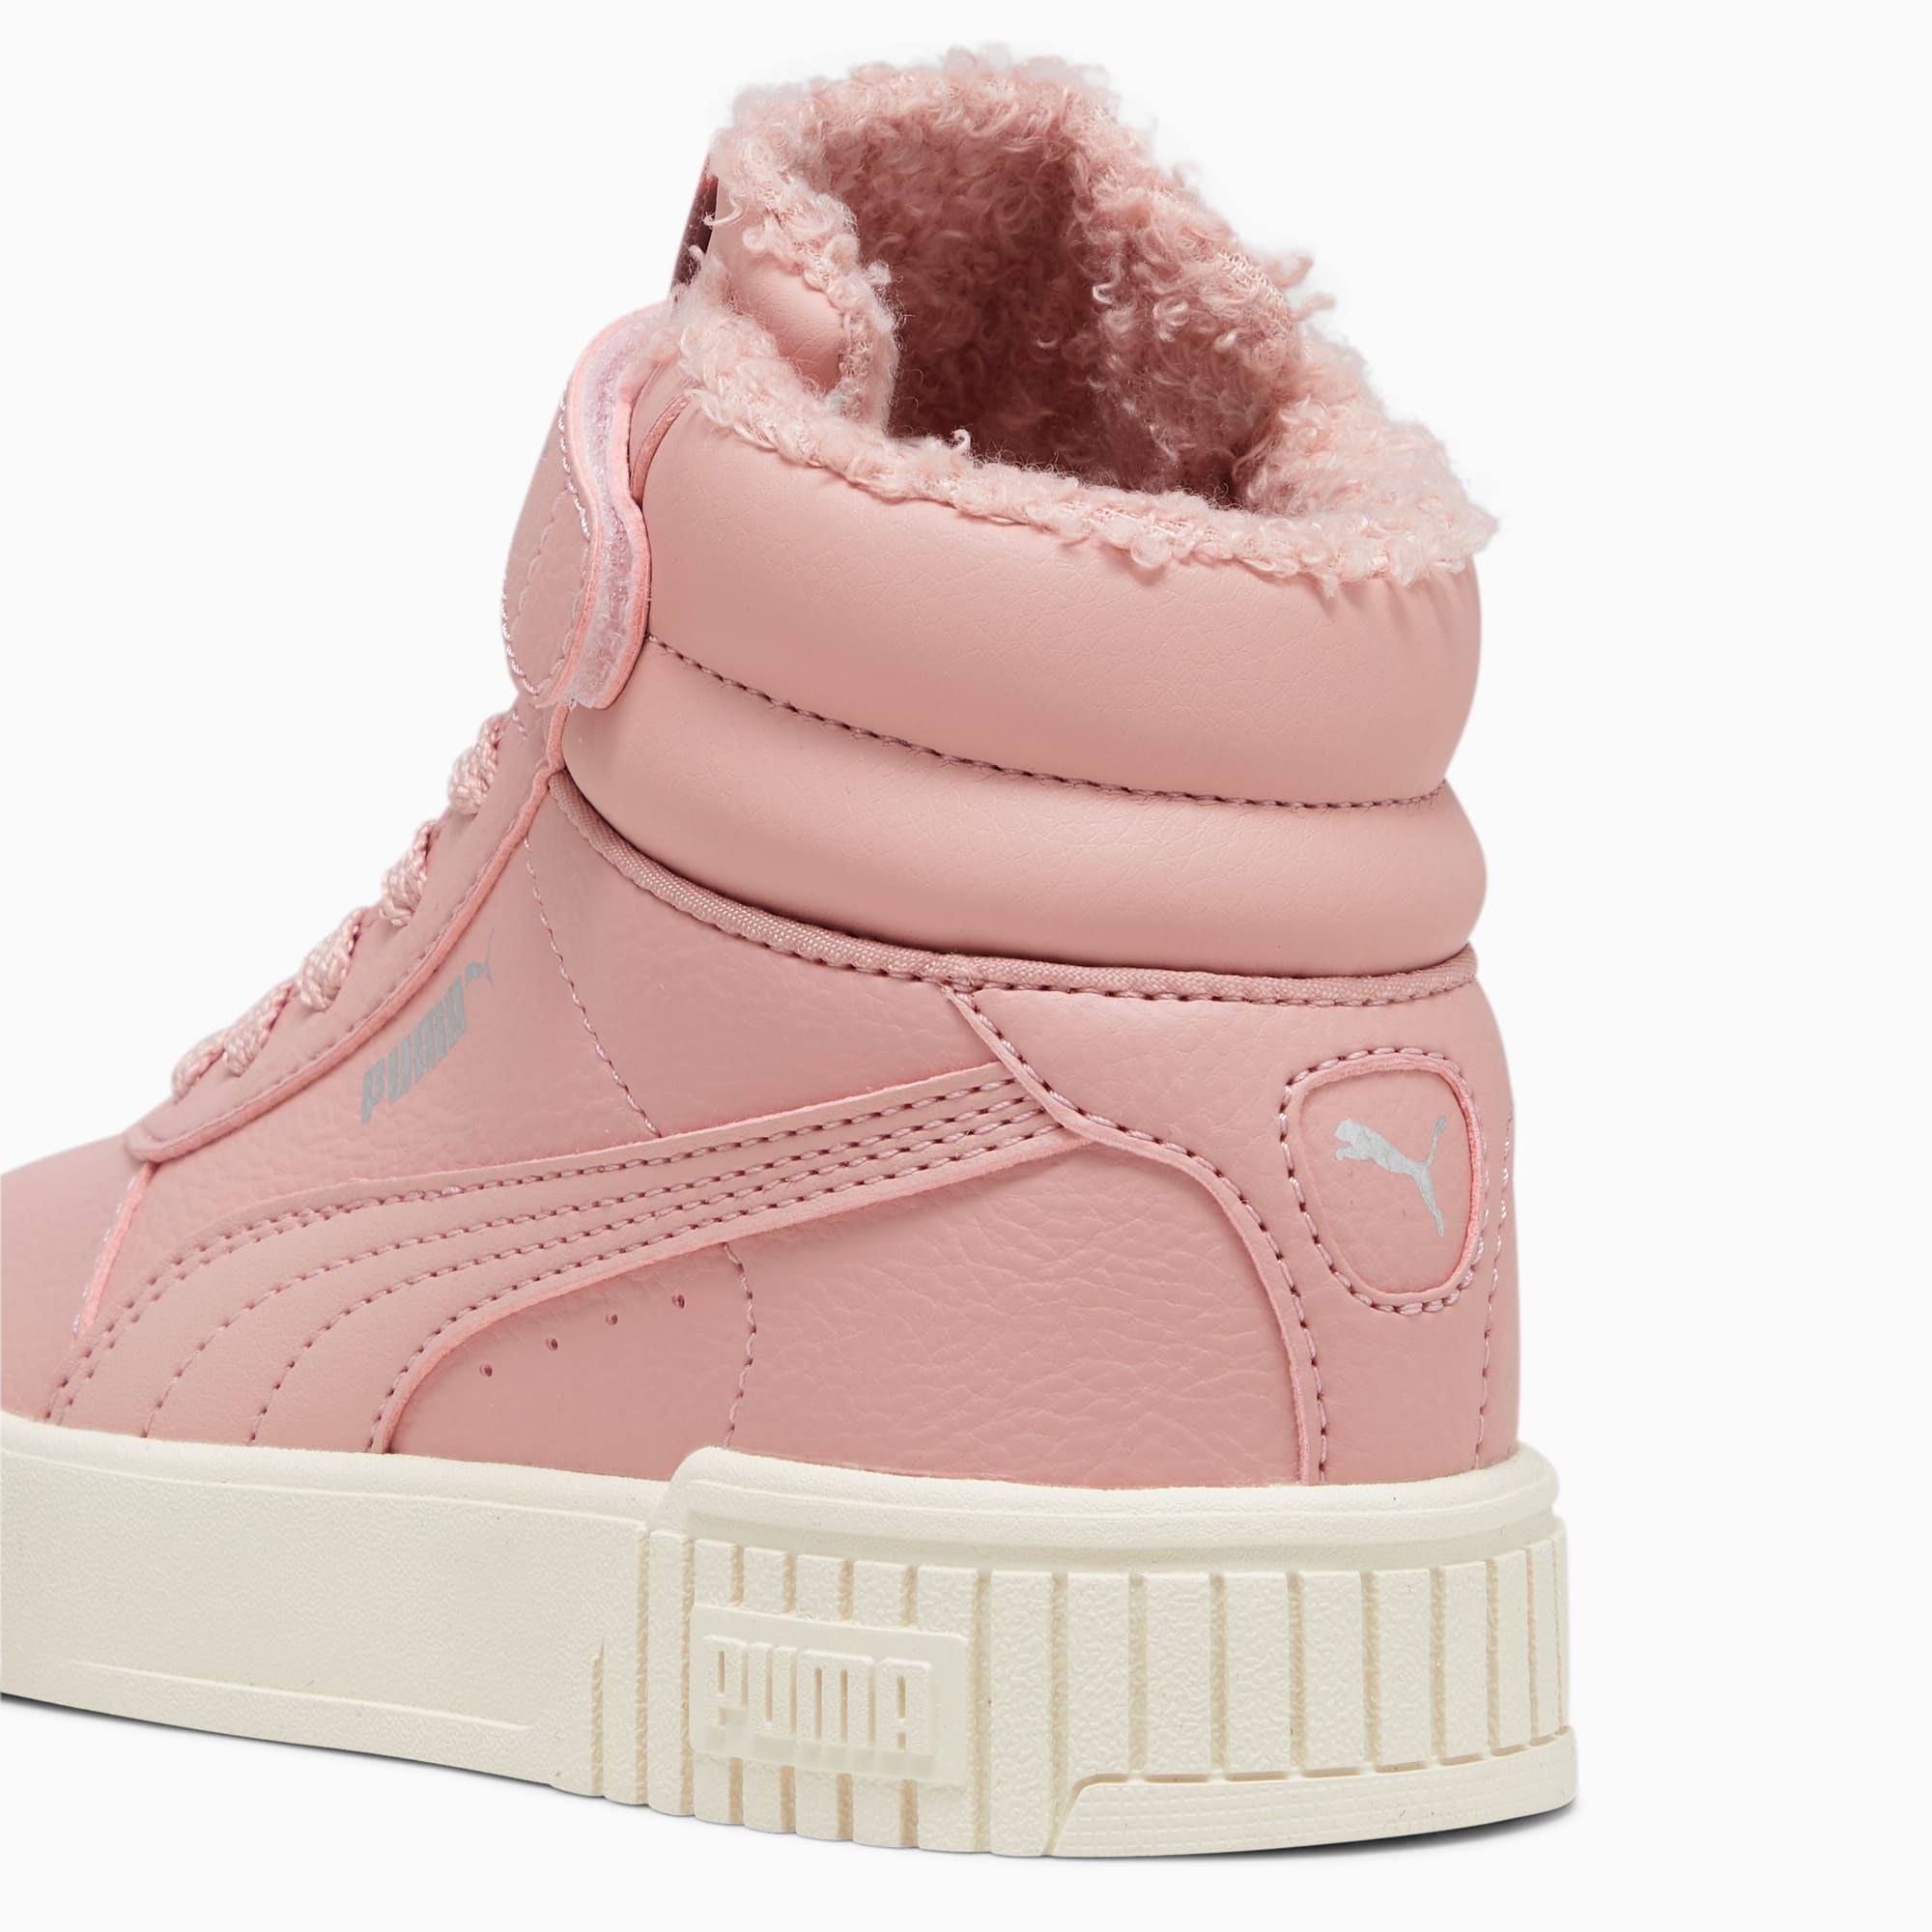 Scarpe Sneakers Carina 2.0 Mid Winter Da Bambina, Rosa/Bianco/Argento/Altro